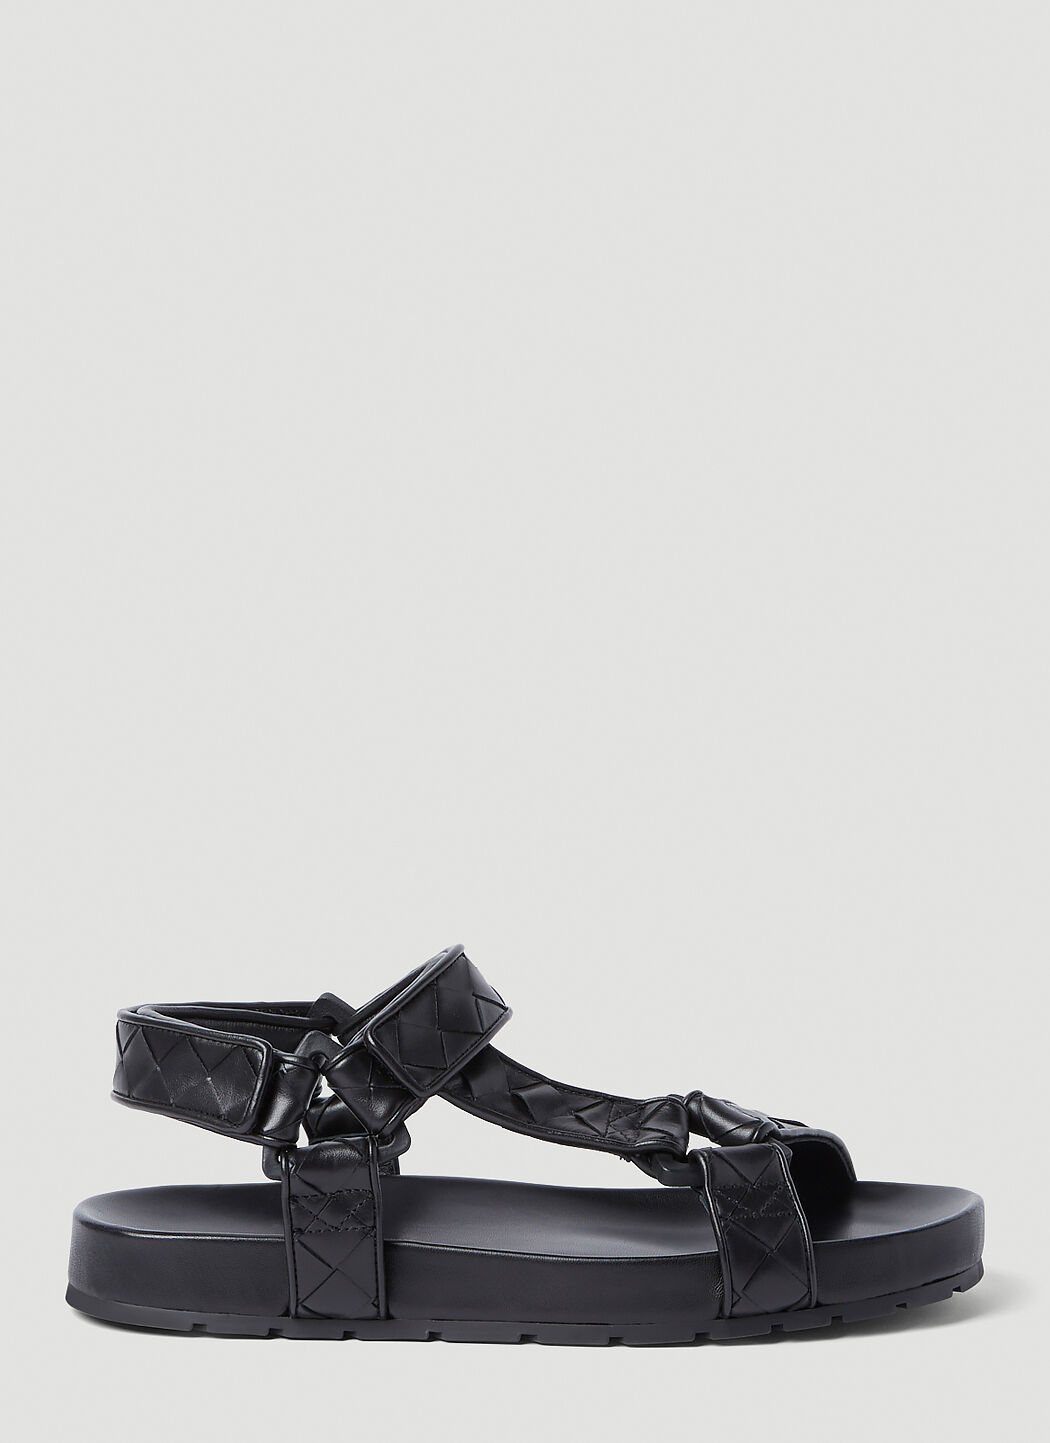 Balenciaga Intrecciato Sandals Black bal0156014